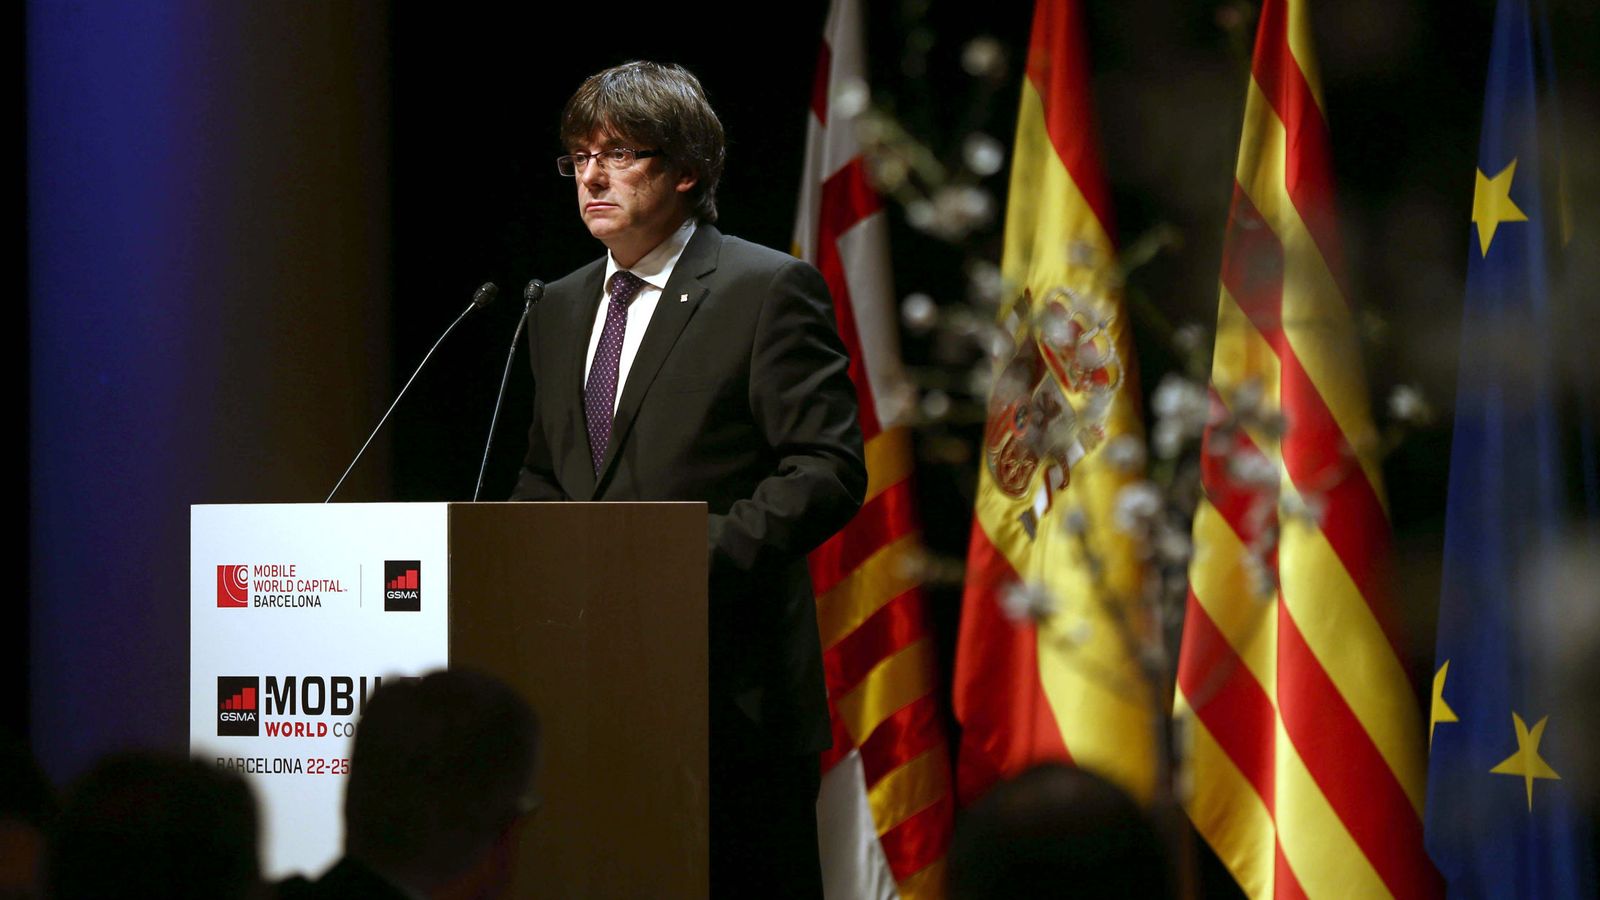 Foto: El presidente de la Generalitat de Cataluña, Carles Puigdemont, durante su discurso en el Mobile World Congress. (Efe) 